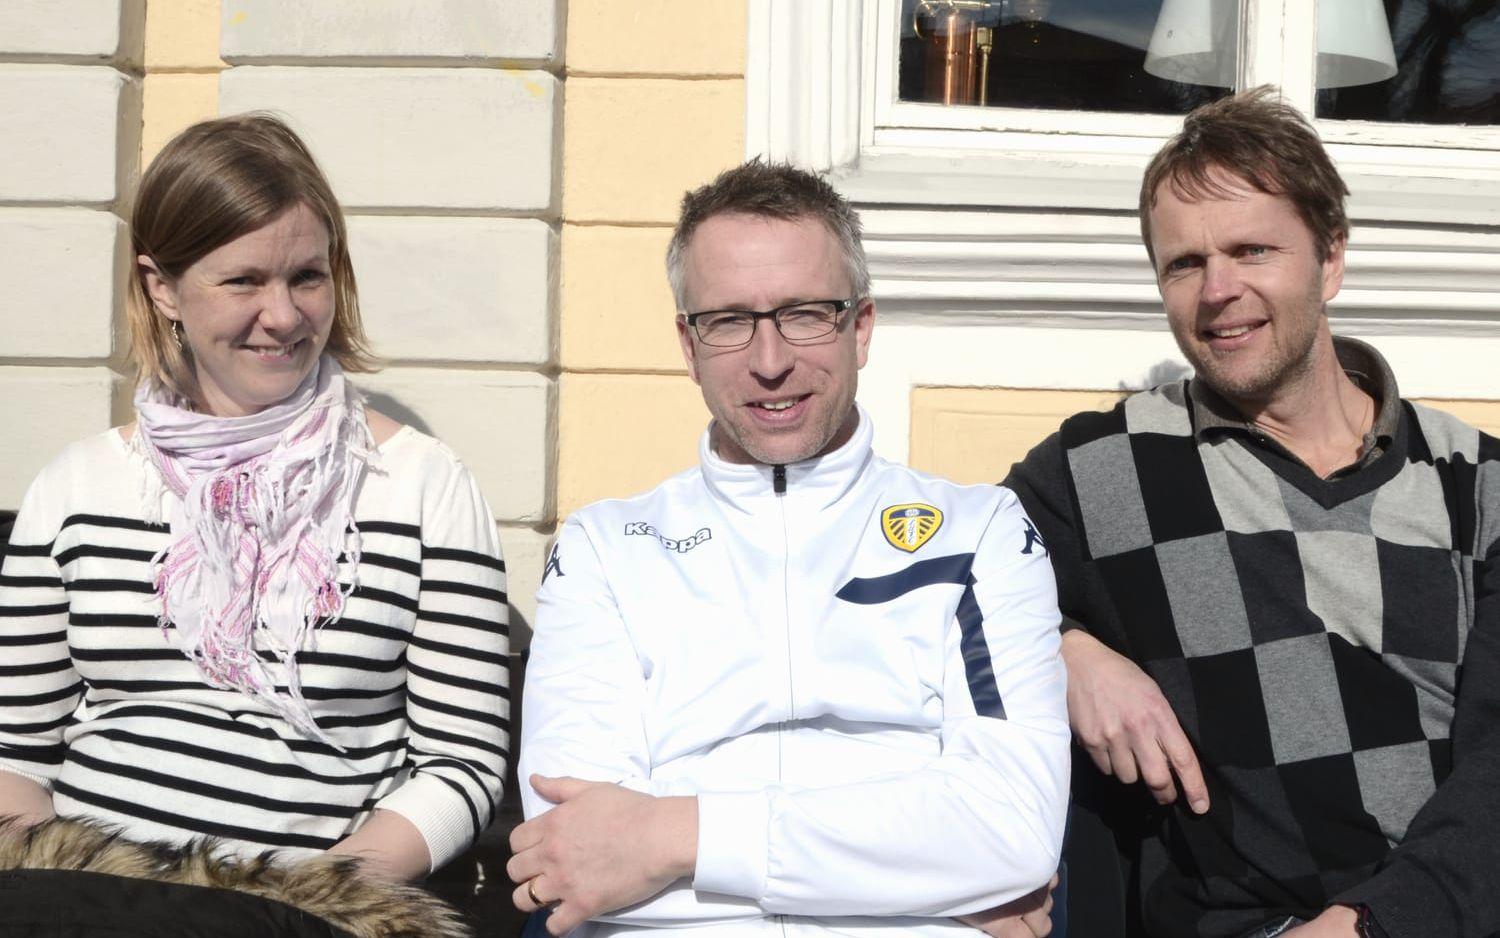 Marina Karlsson, Andreas Hagberg och Ola Bengtsson, Uddevalla. 1. – Det är det. 2. – Så fort solen är framme, och man kan sitta vid en vägg med ett gott läge, där det är lä. Det kan vara nollgradigt, bara det är soligt och gott väder.